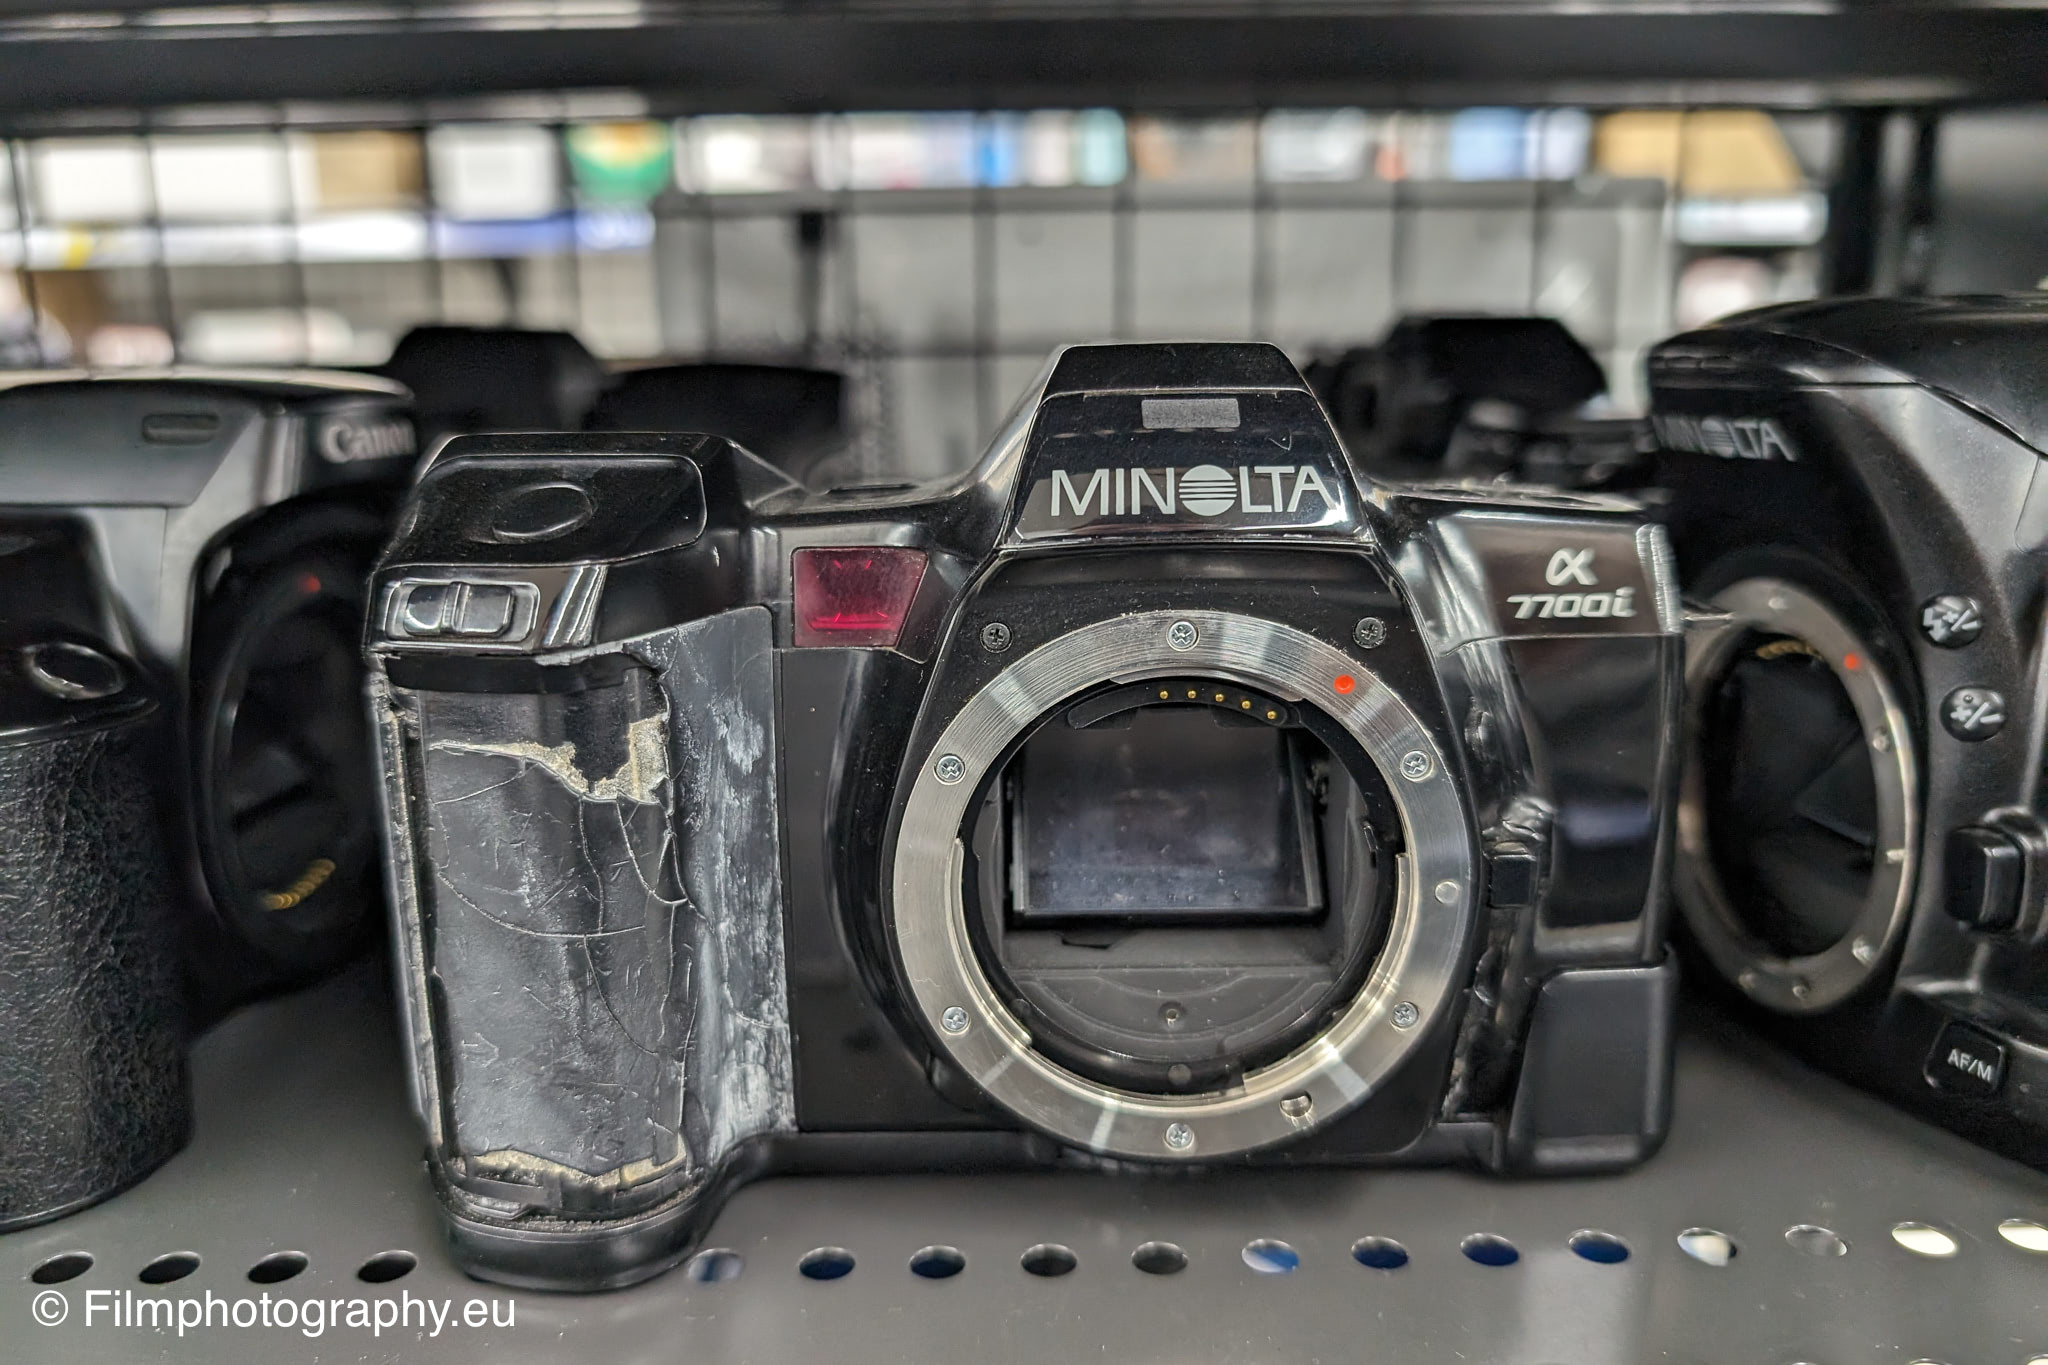 Minolta Alpha 7700i - Get info on features, films & batteries